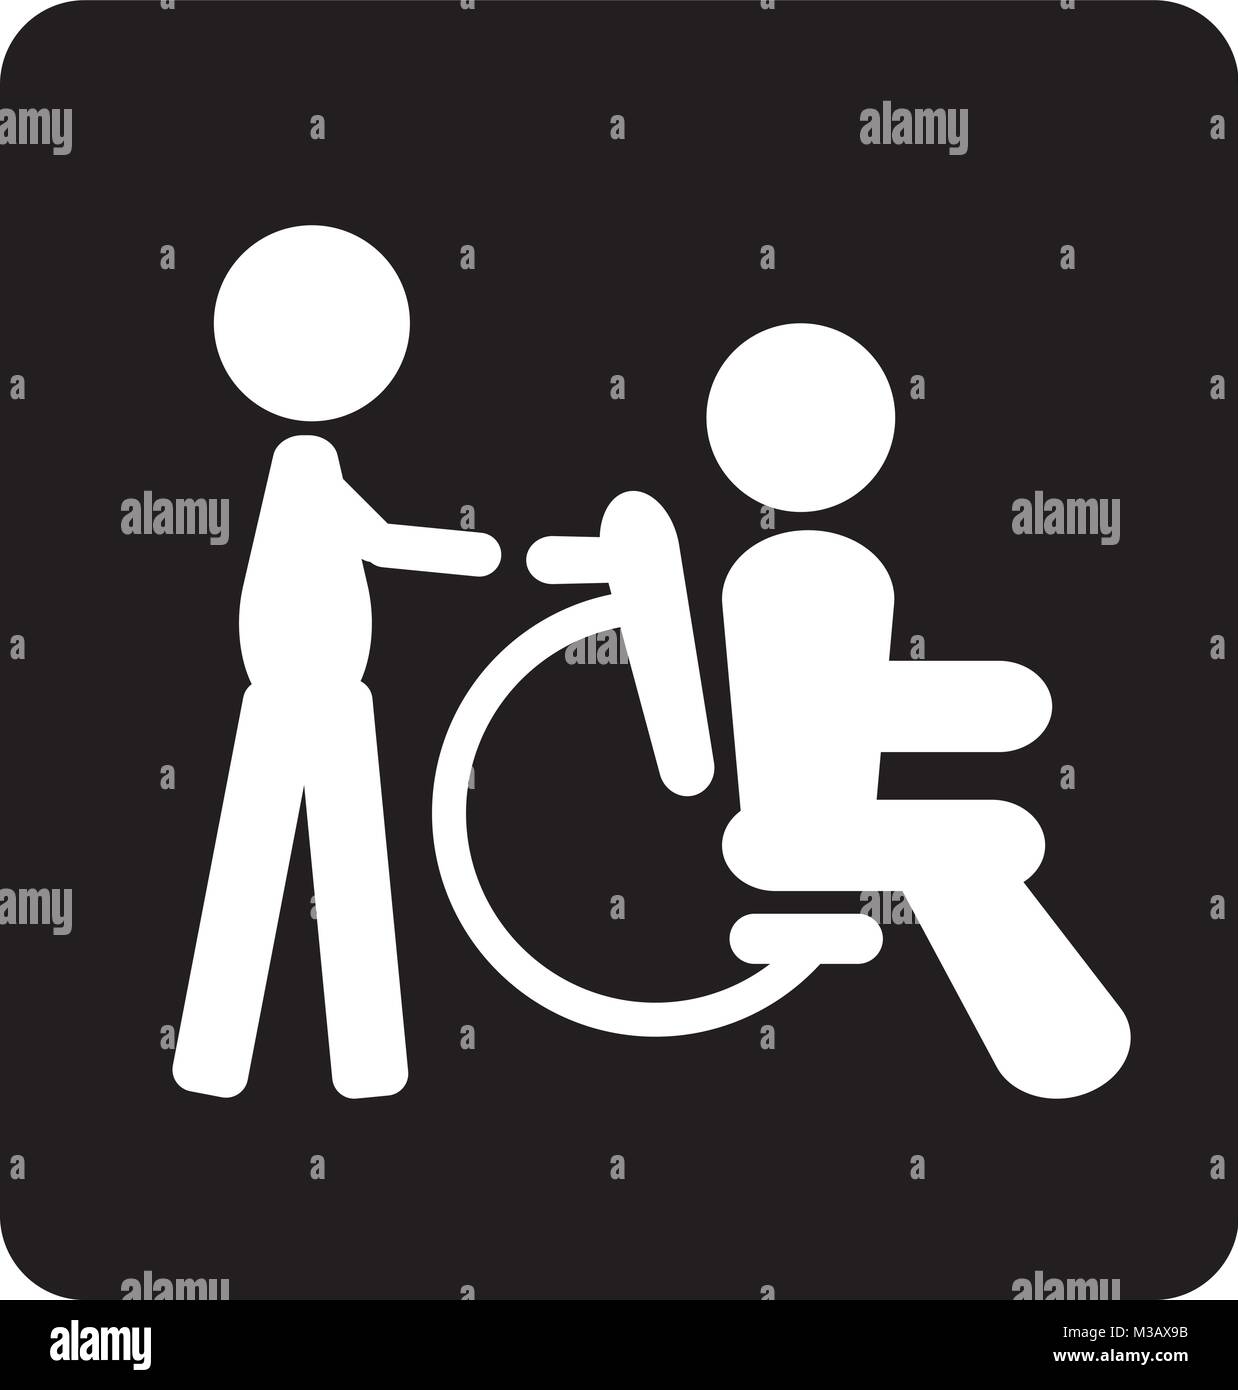 Rollstuhl und interessierende Person oder ungültige deaktiviert Symbol Vektor und Illustration Stock Vektor